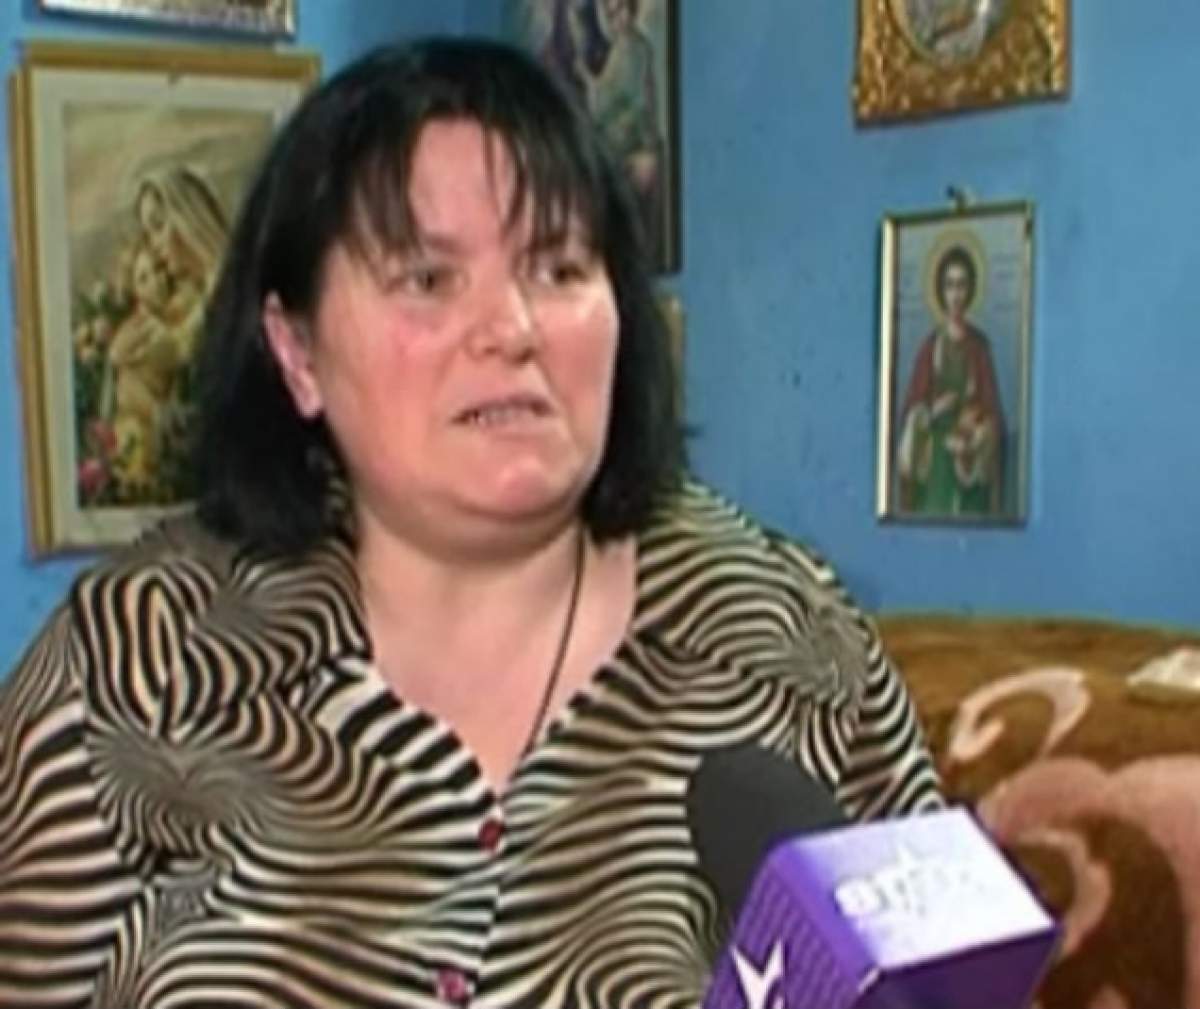 VIDEO / Femeia care vorbeşte cu Dumnezeu face mărturisiri tulburătoare: "Trupele ruseşti sunt deja în ţara noastră, iar flăcările vor înconjura România"